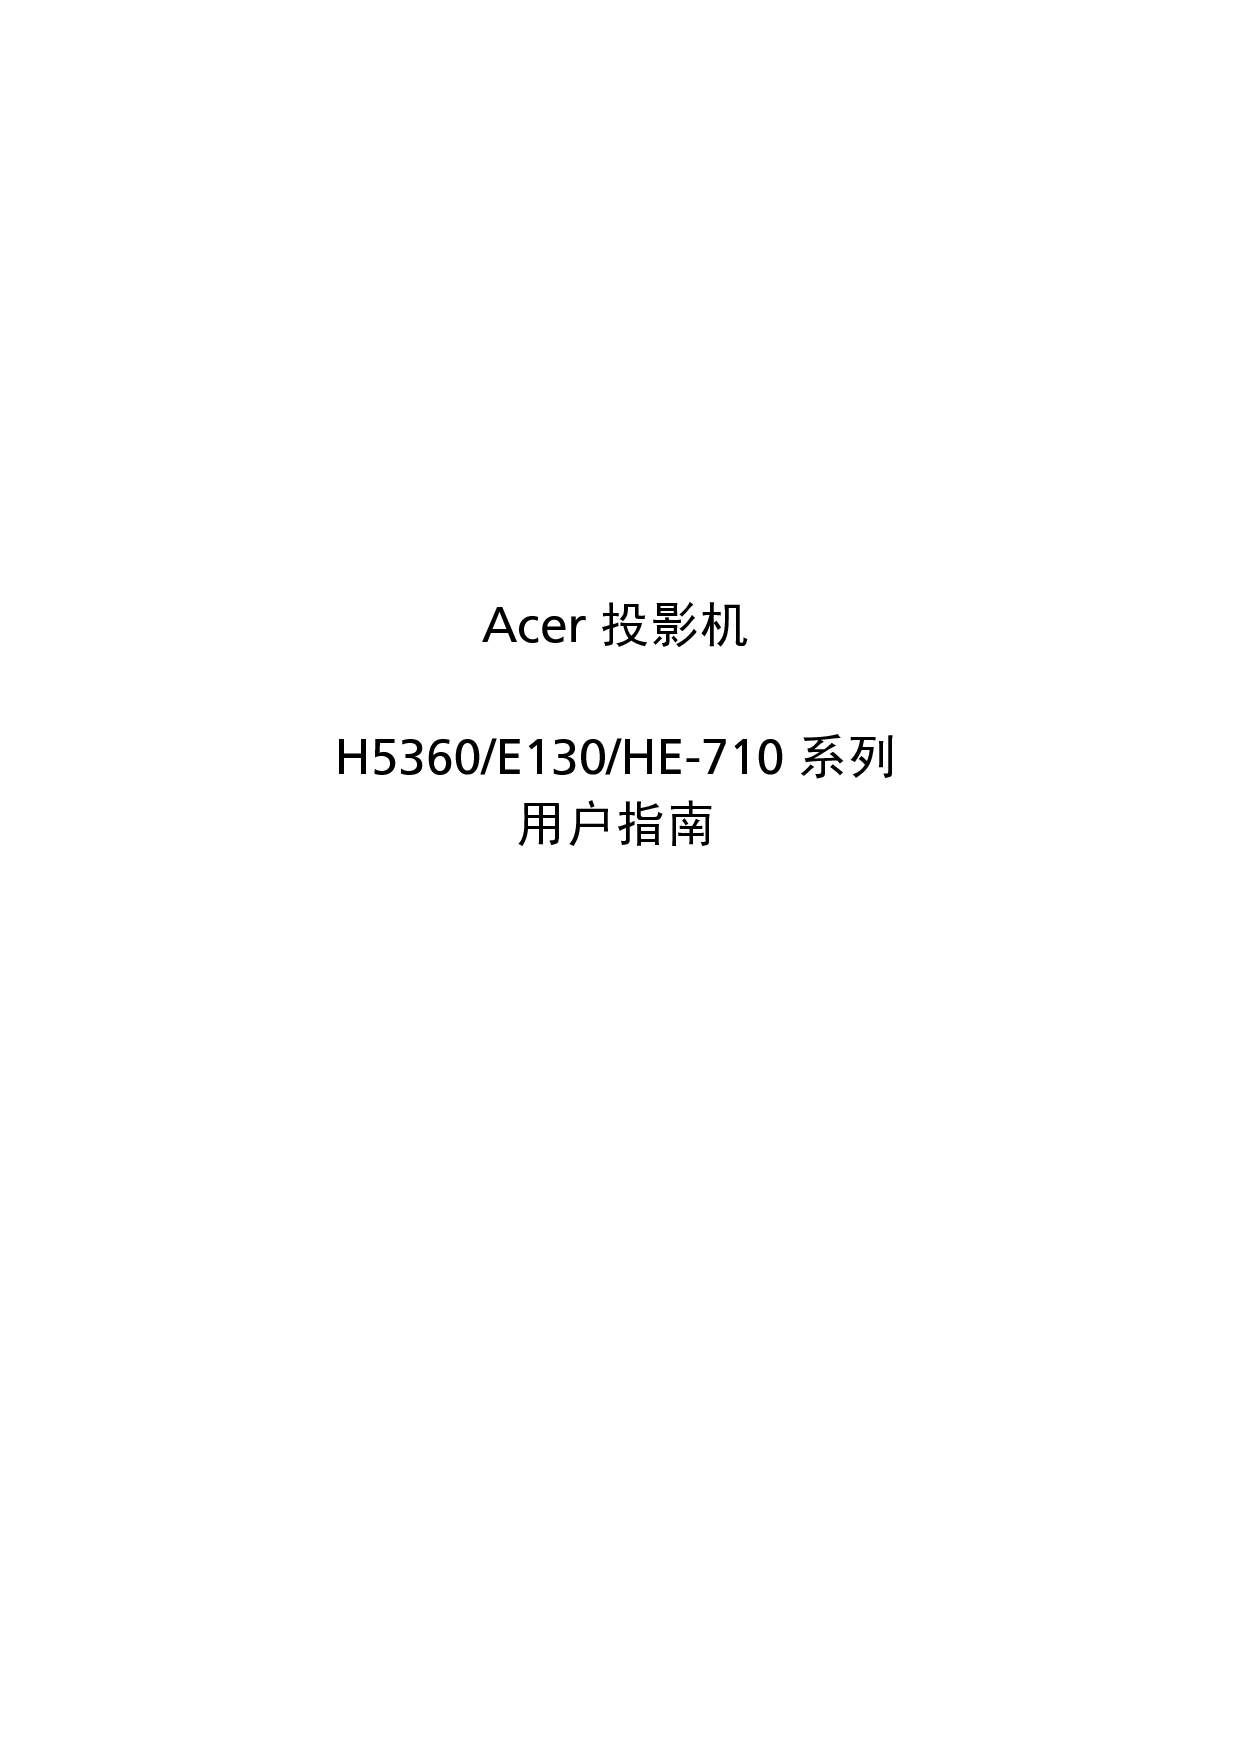 宏碁 Acer E130, H5360, HE-710 用户指南 封面